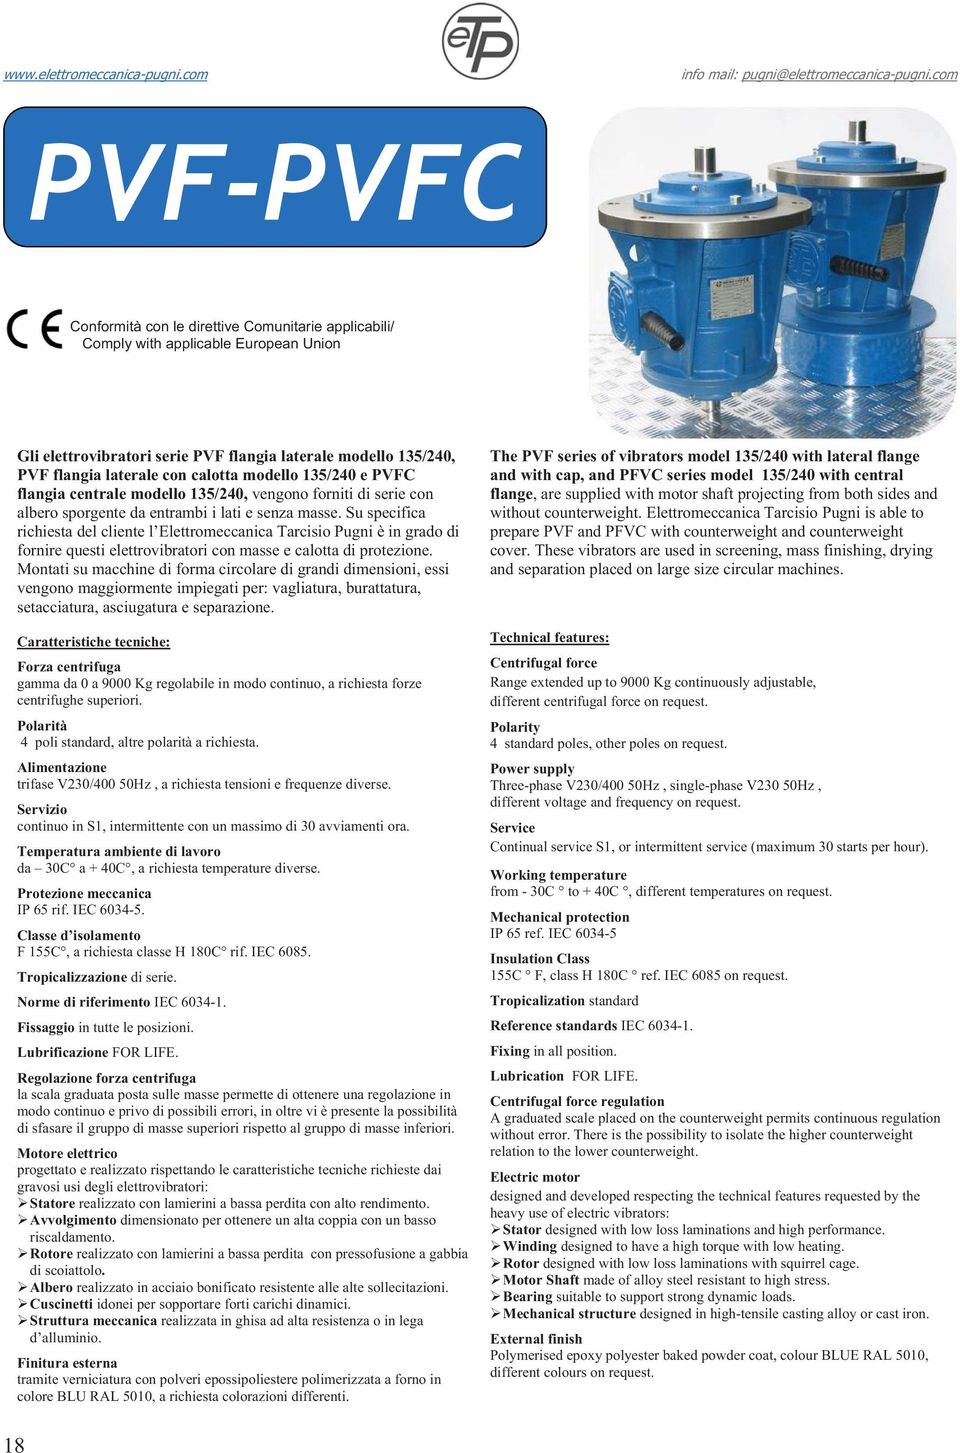 Su specifica richiesta del cliente l Elettromeccanica Tarcisio Pugni è in grado di fornire questi elettrovibratori con masse e calotta di protezione.